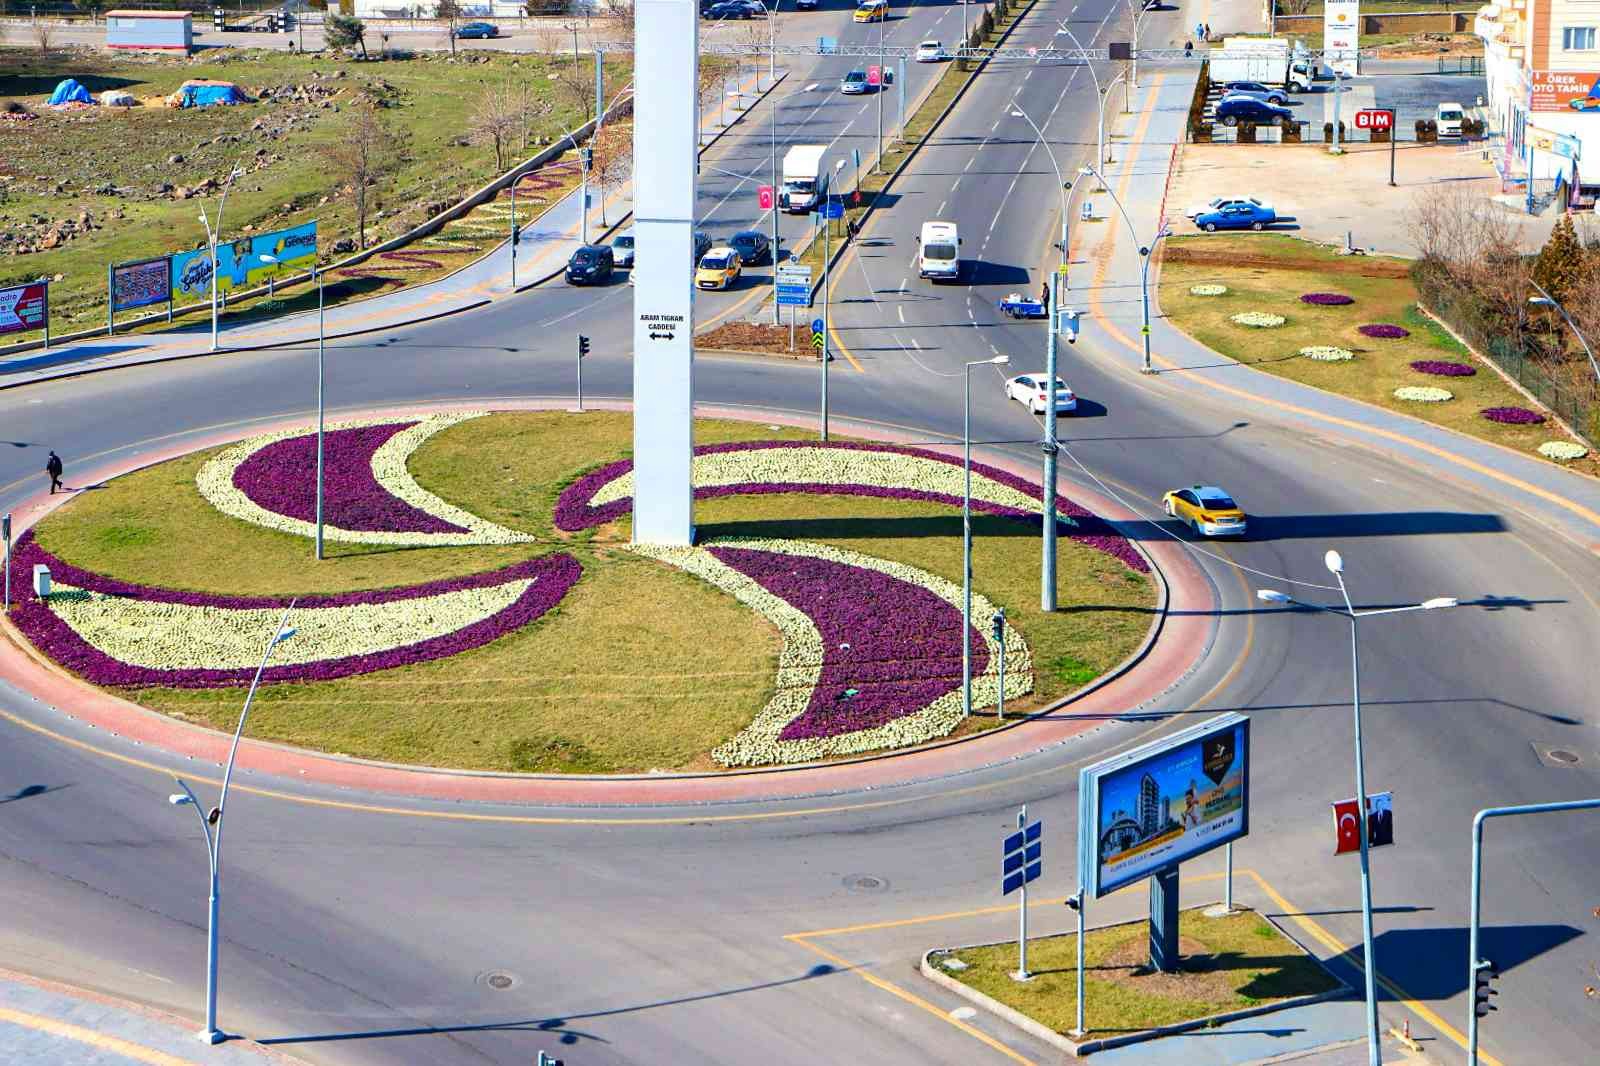 Diyarbakır 3 milyon çiçekle süslenecek #diyarbakir